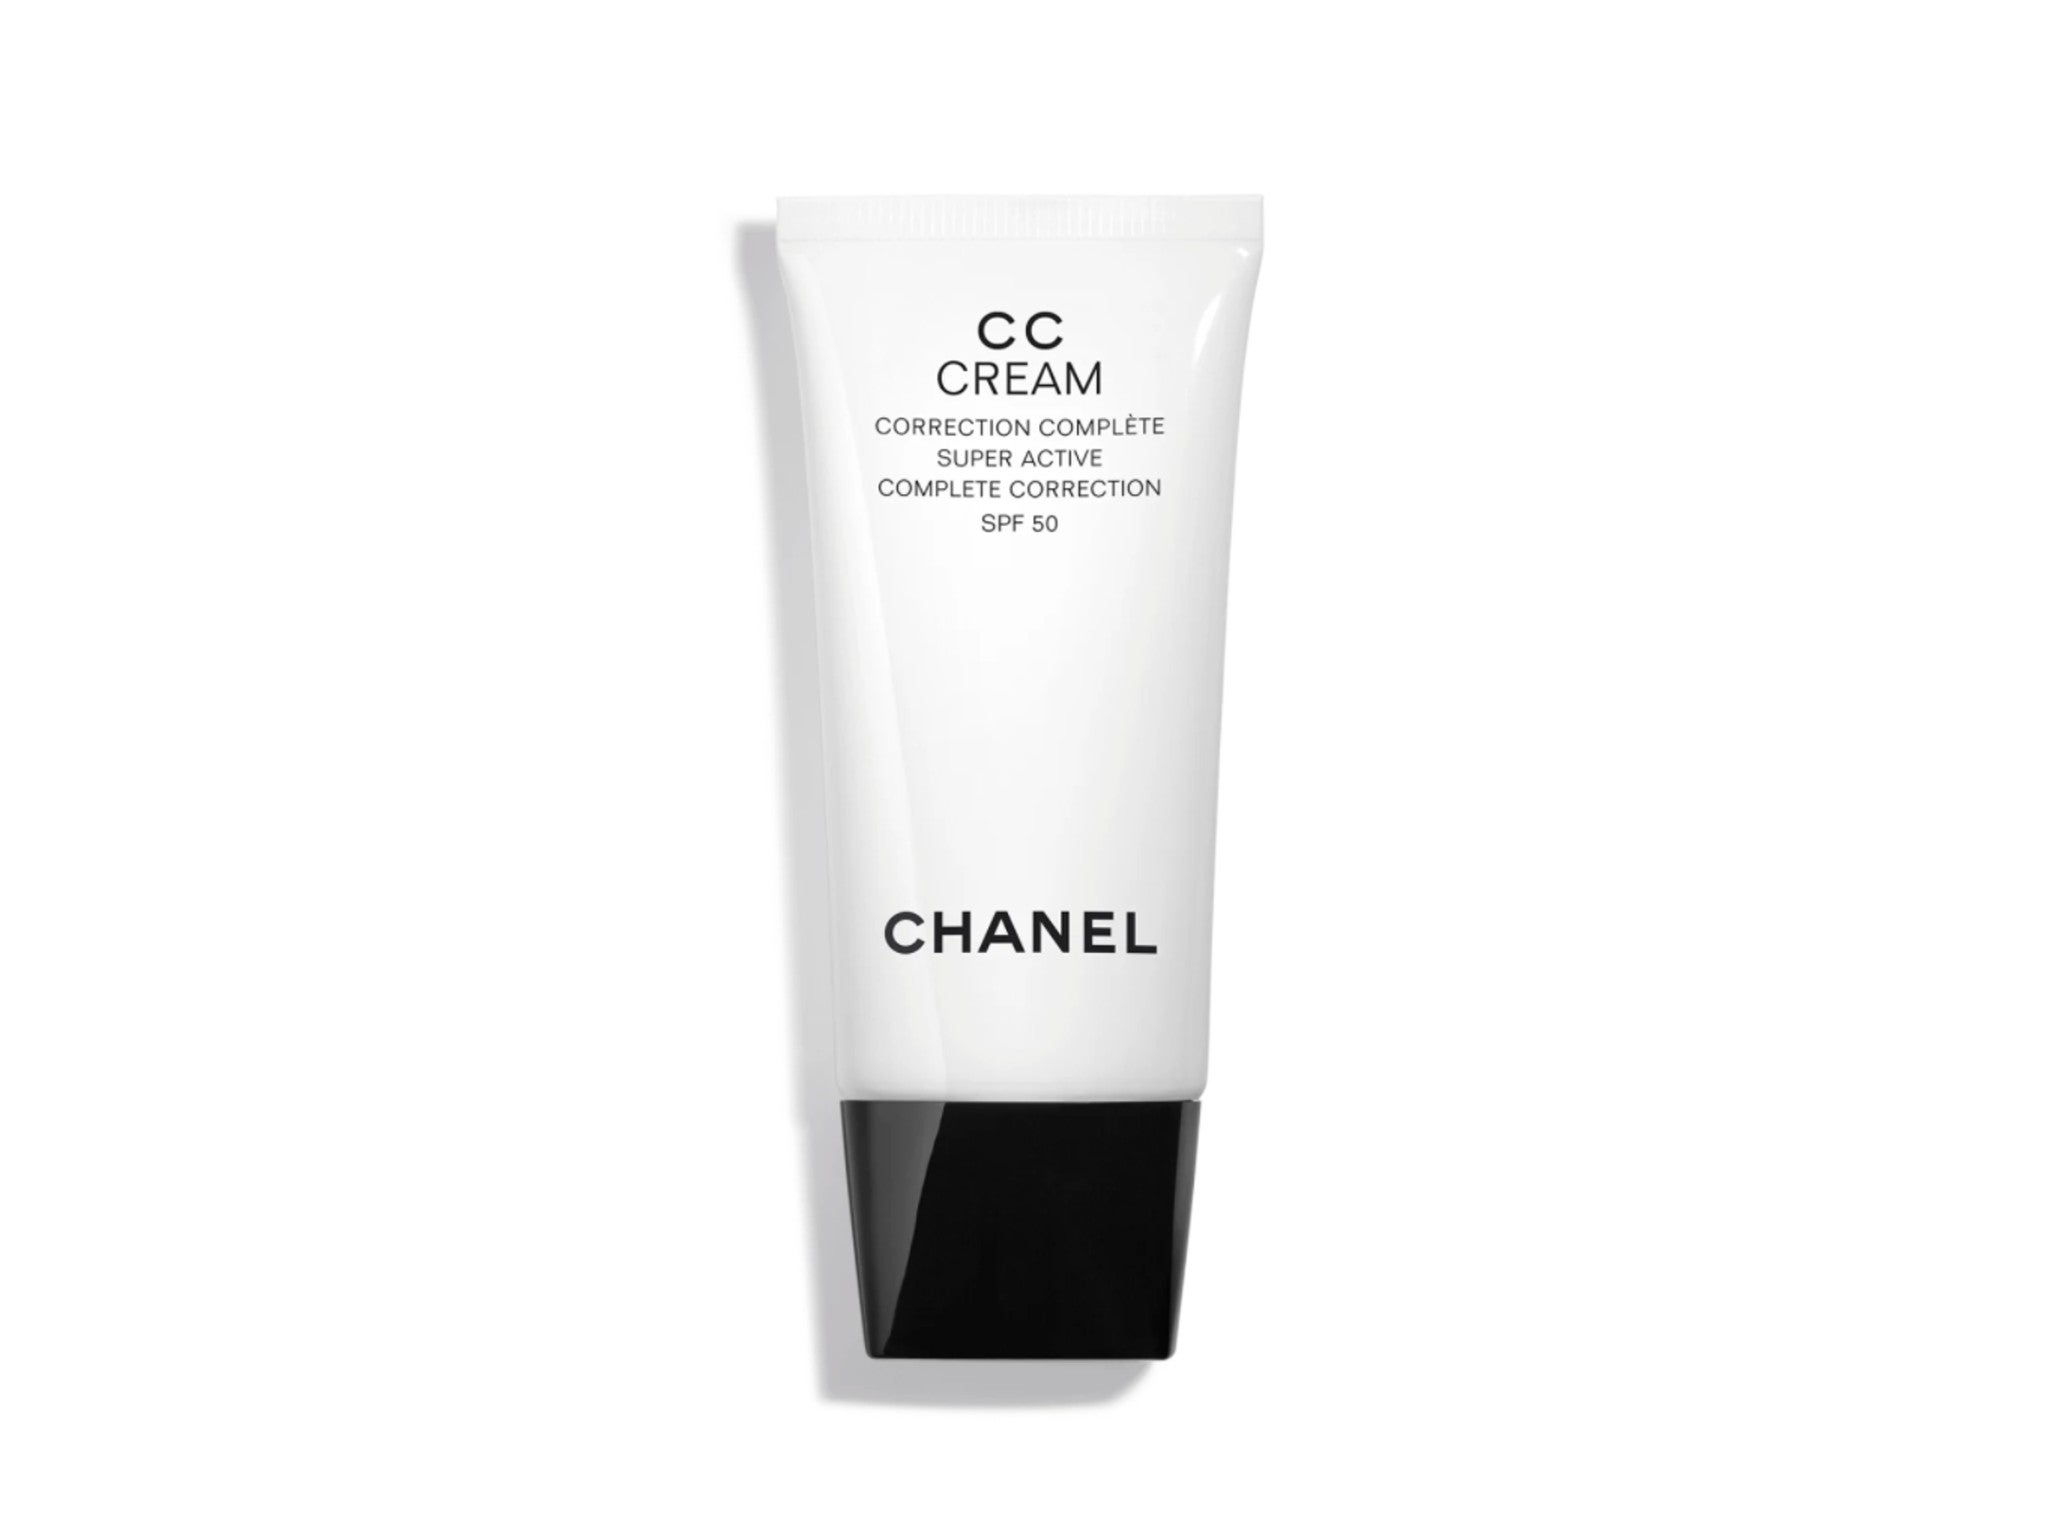 Chanel CC cream  indybest.jpg